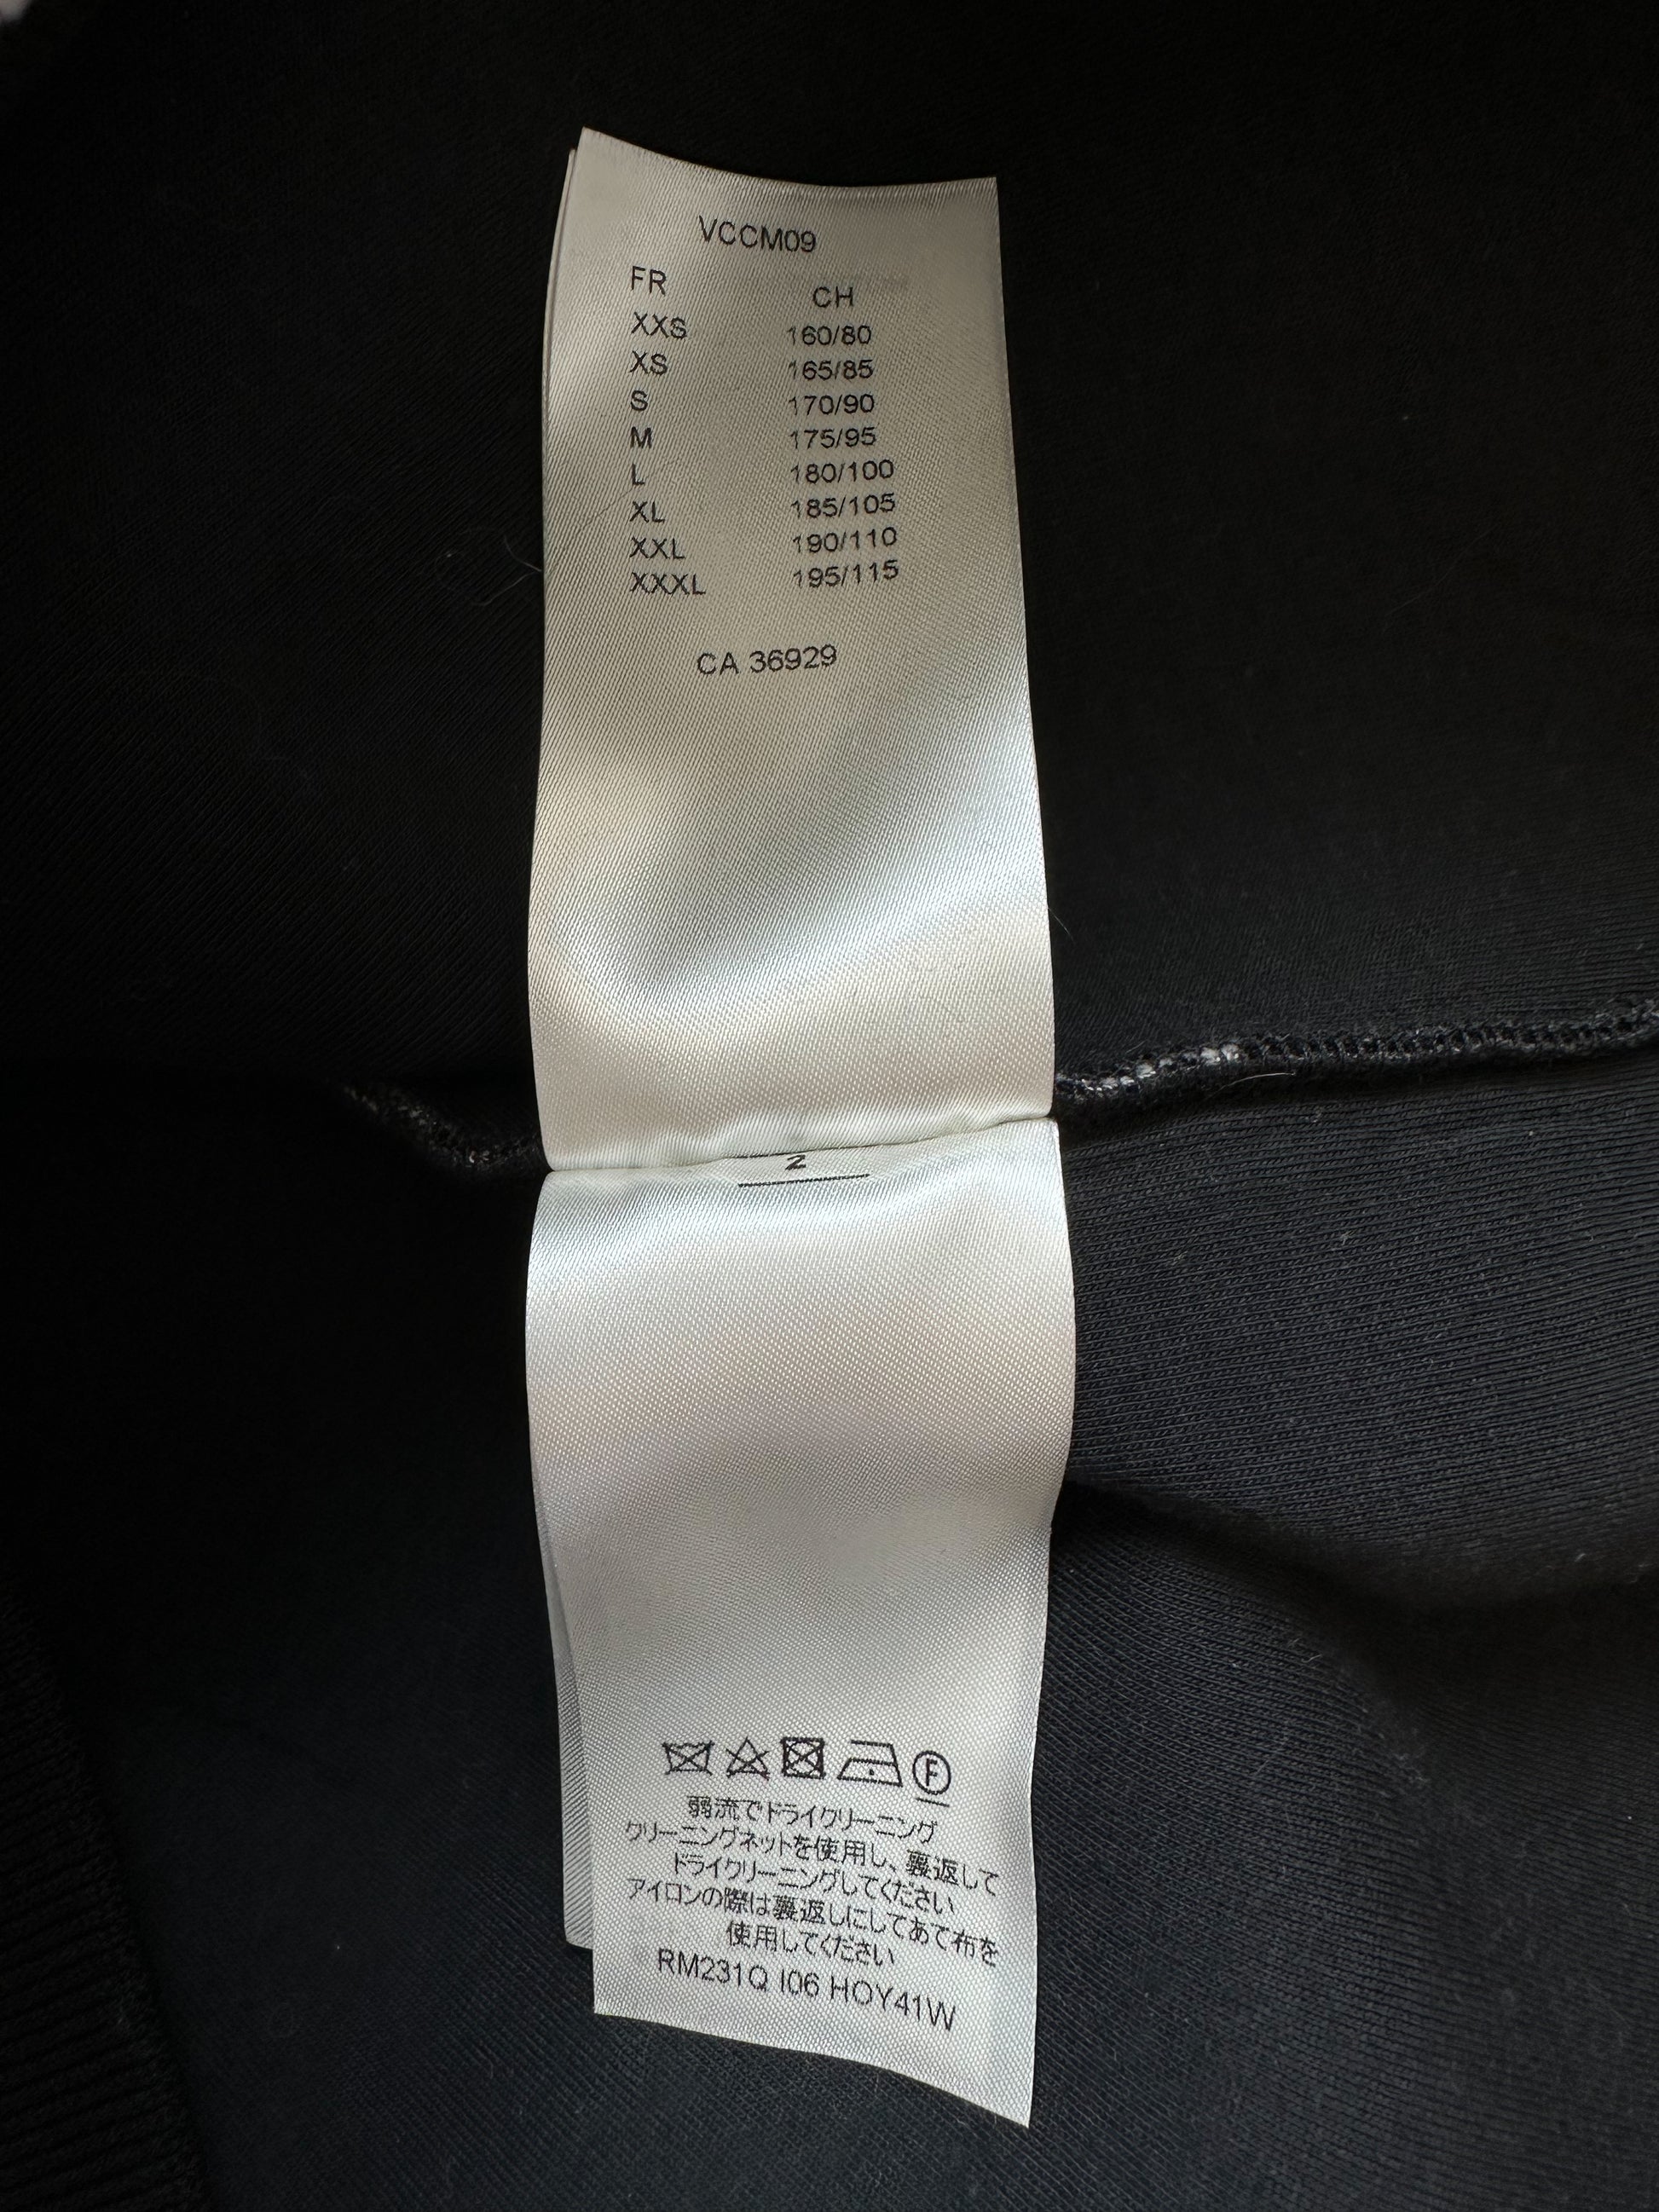 Louis Vuitton Black & Grey Gradient Monogram Sweater – Savonches